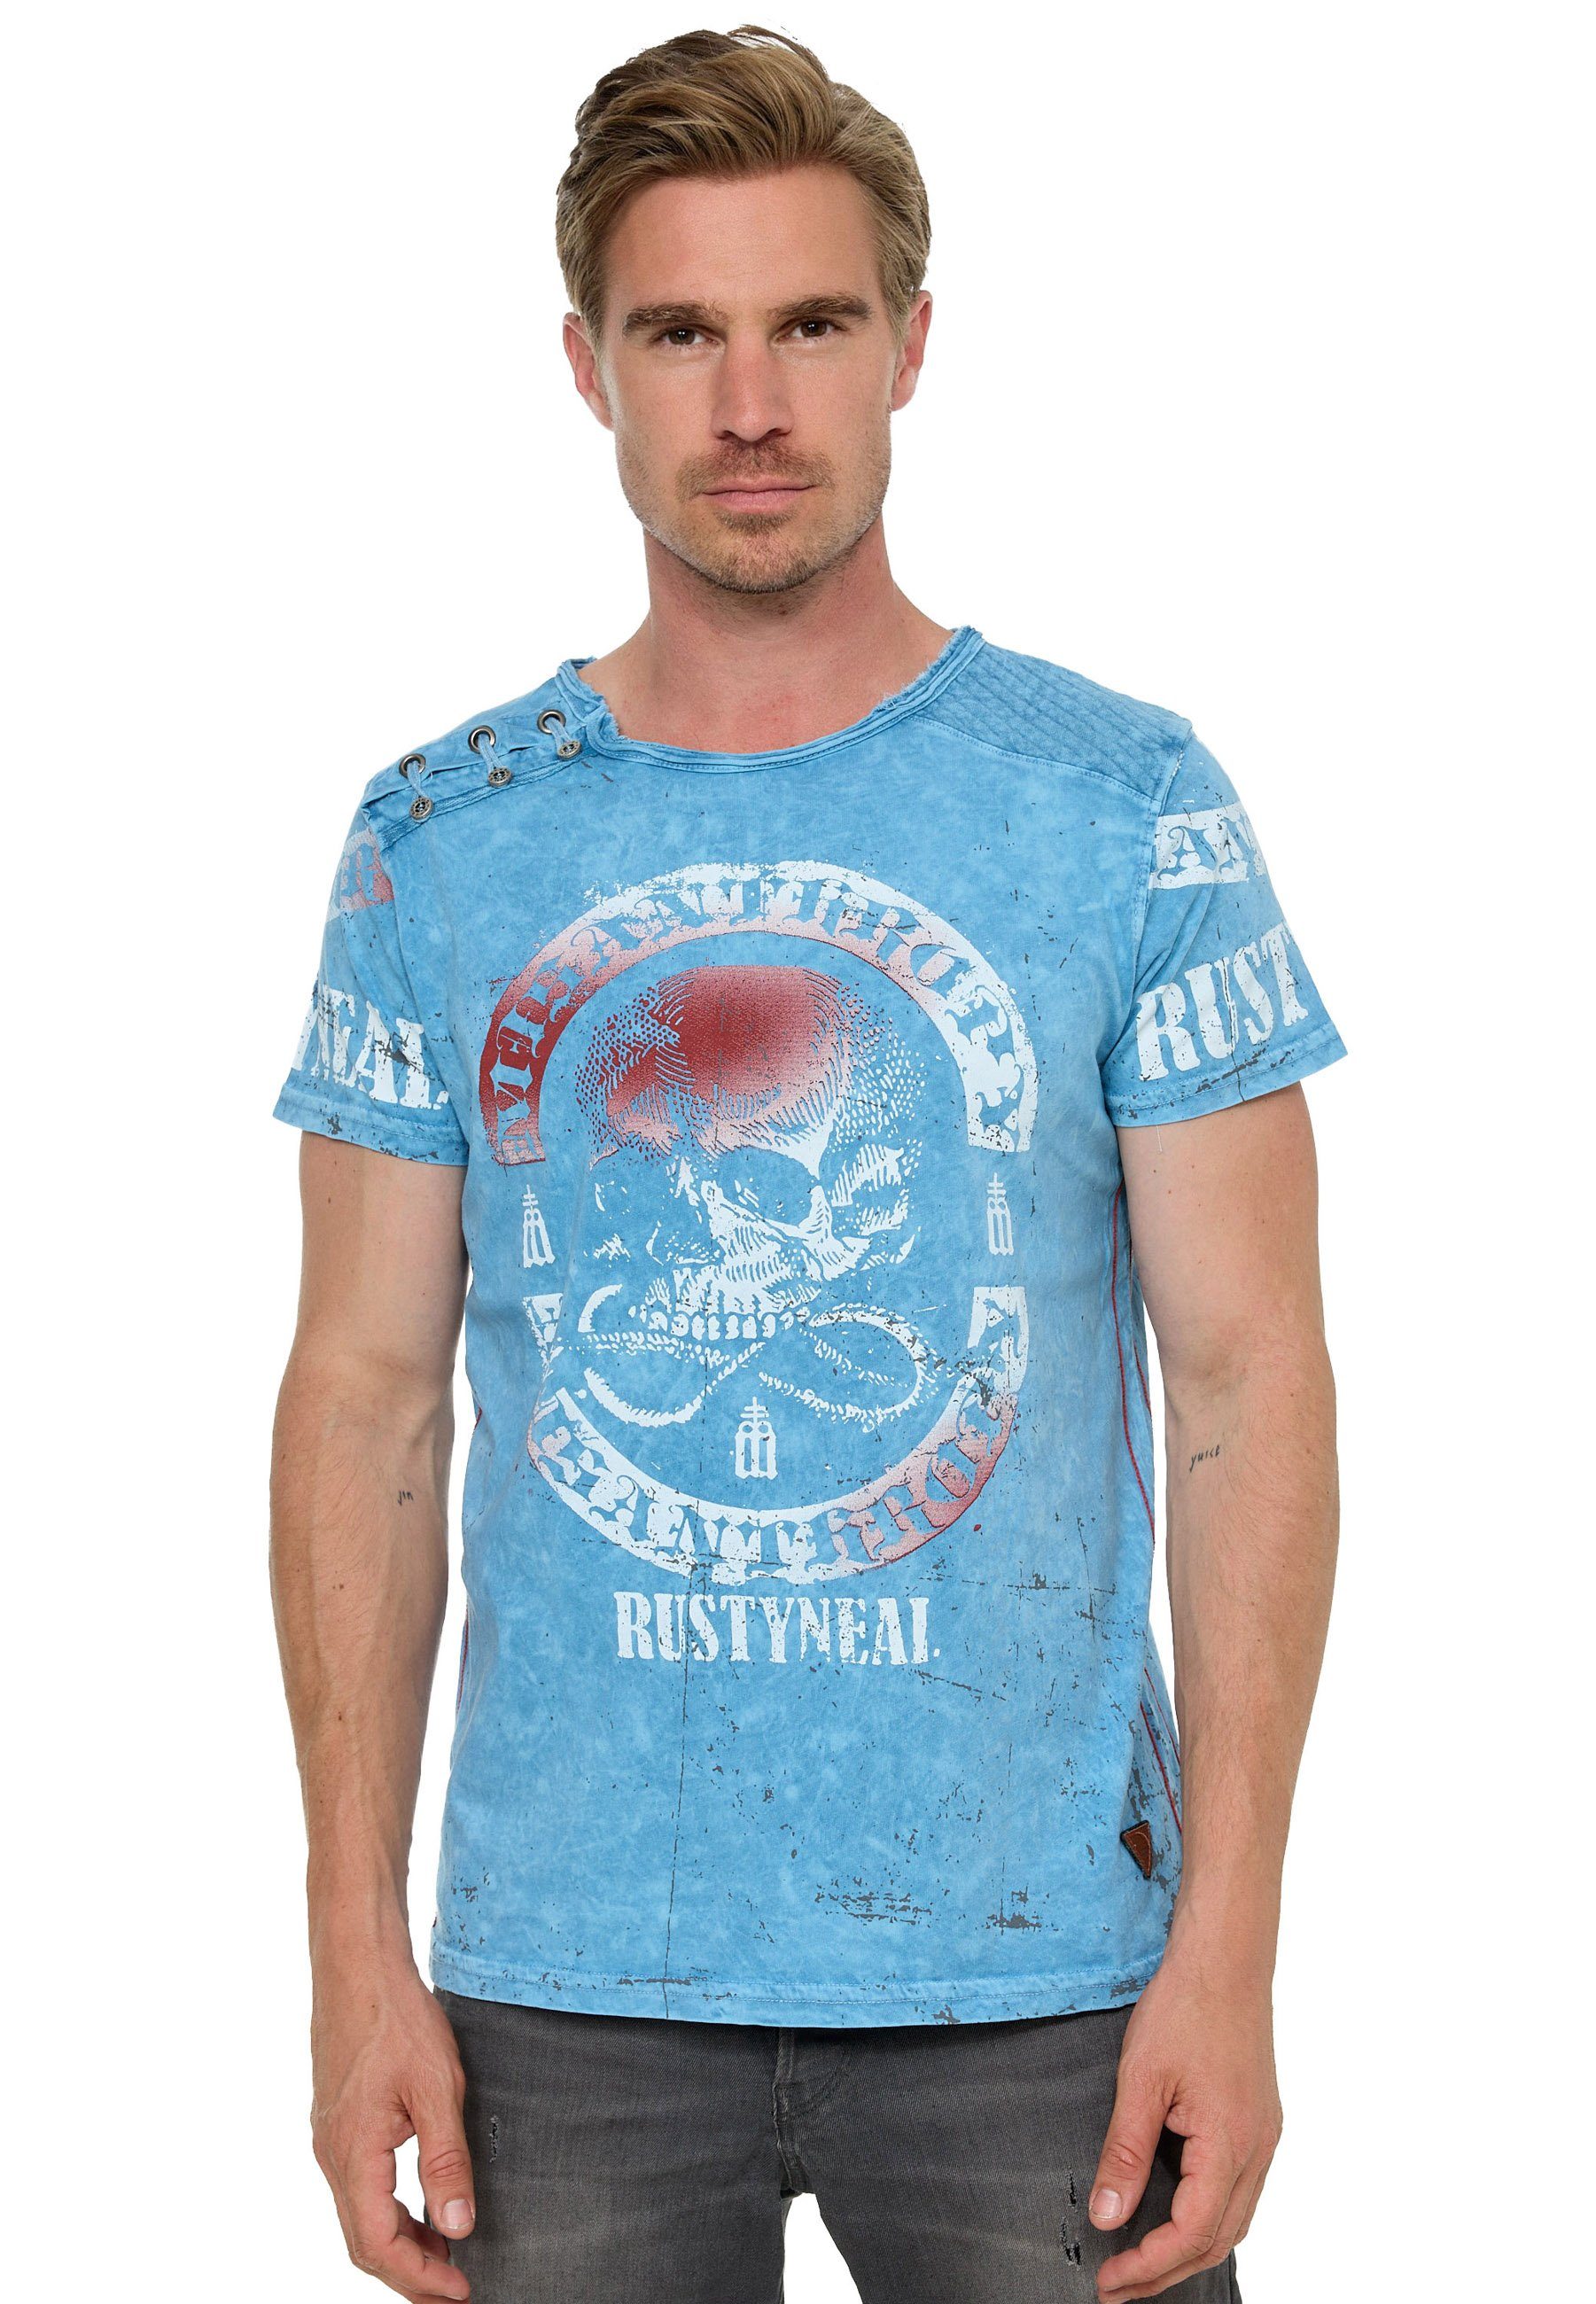 Neal T-Shirt Rusty blau mit Markenprint